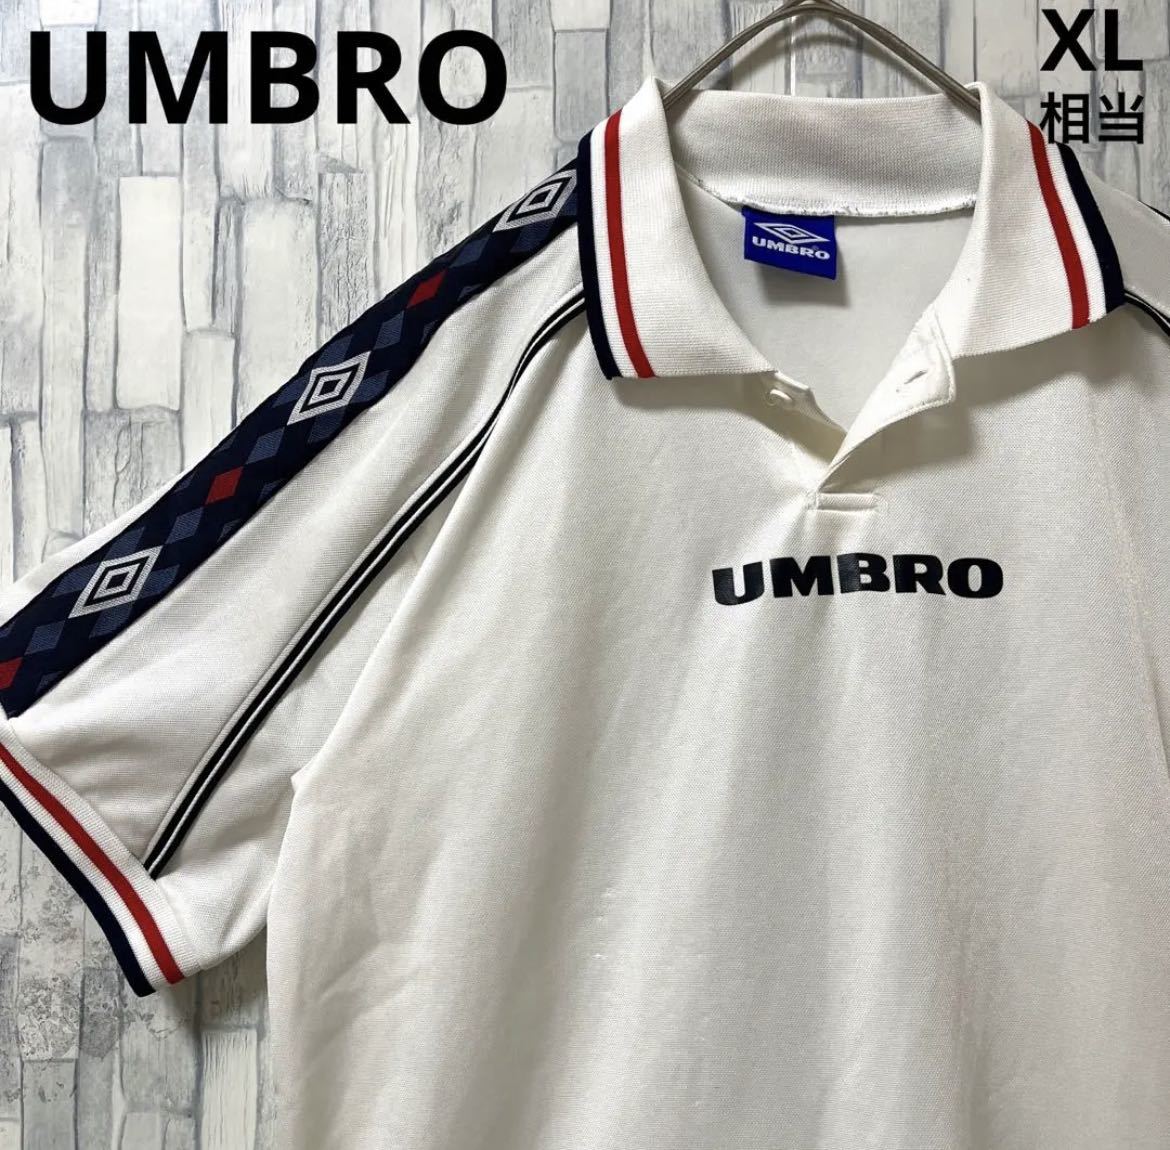 UMBRO アンブロ サッカー ユニフォーム ゲームシャツ 半袖 センター